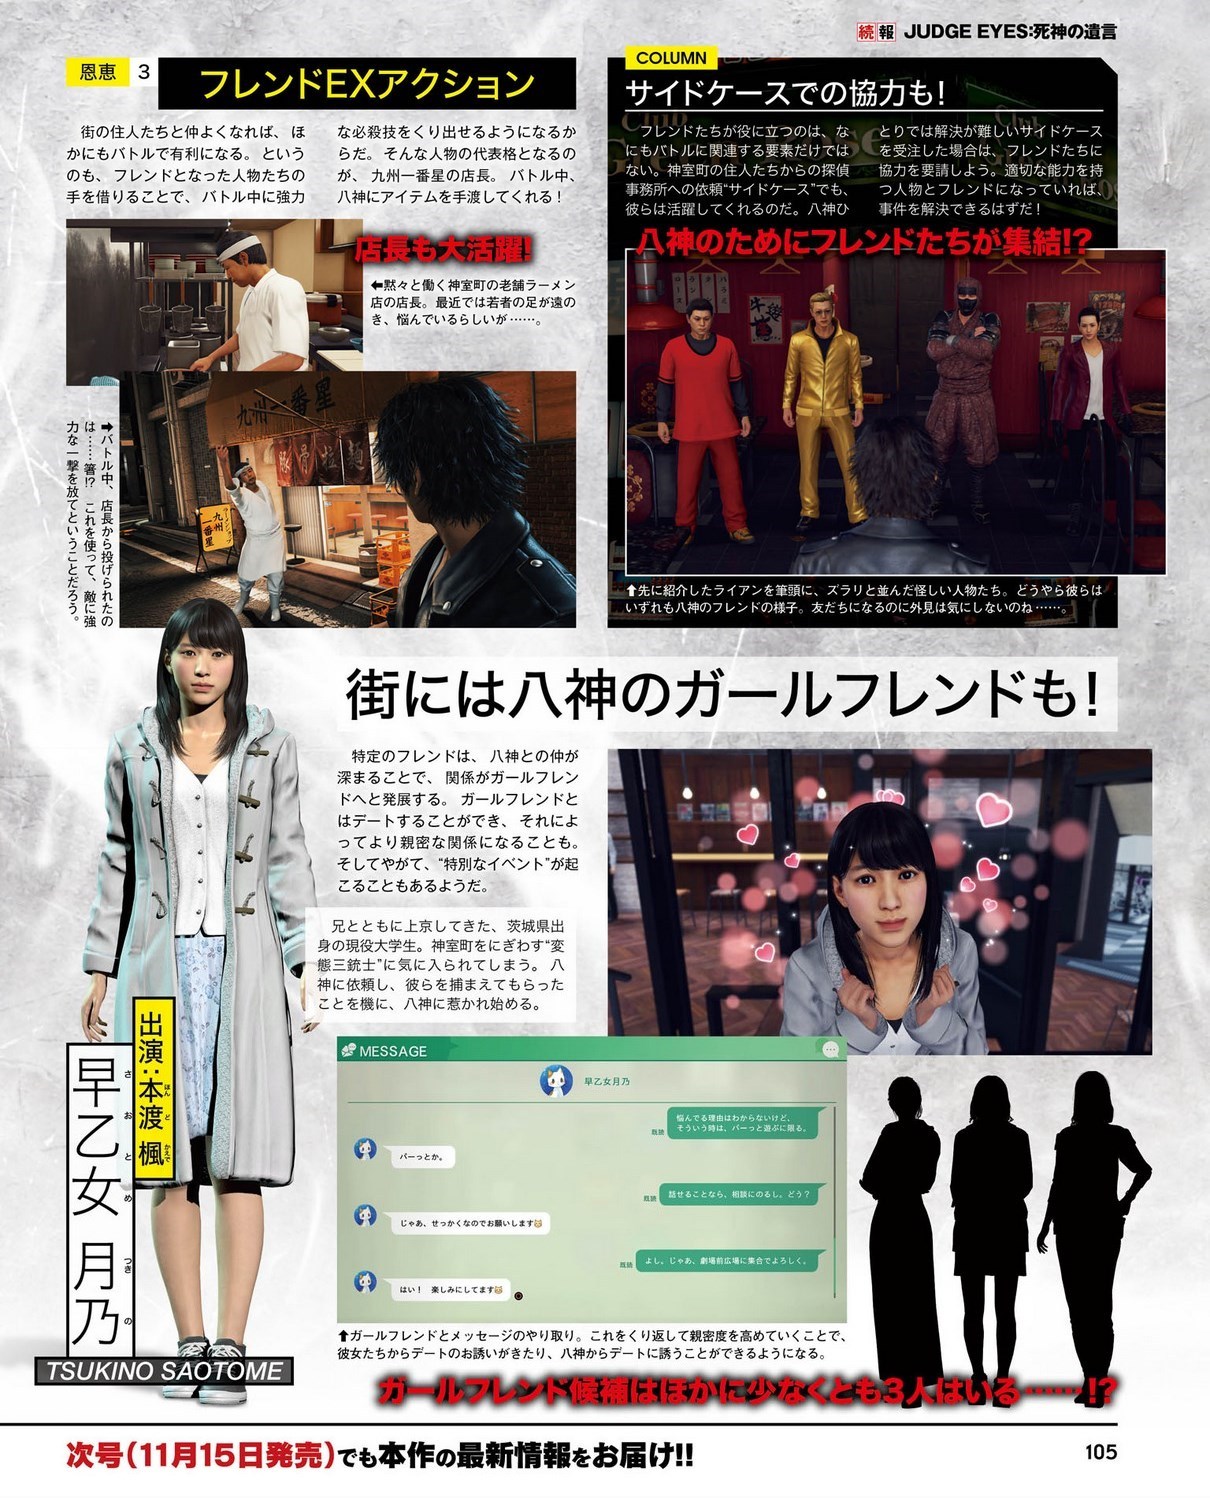 Judge Eyes: Shinigami no Yuigon - Screenshots Bilder